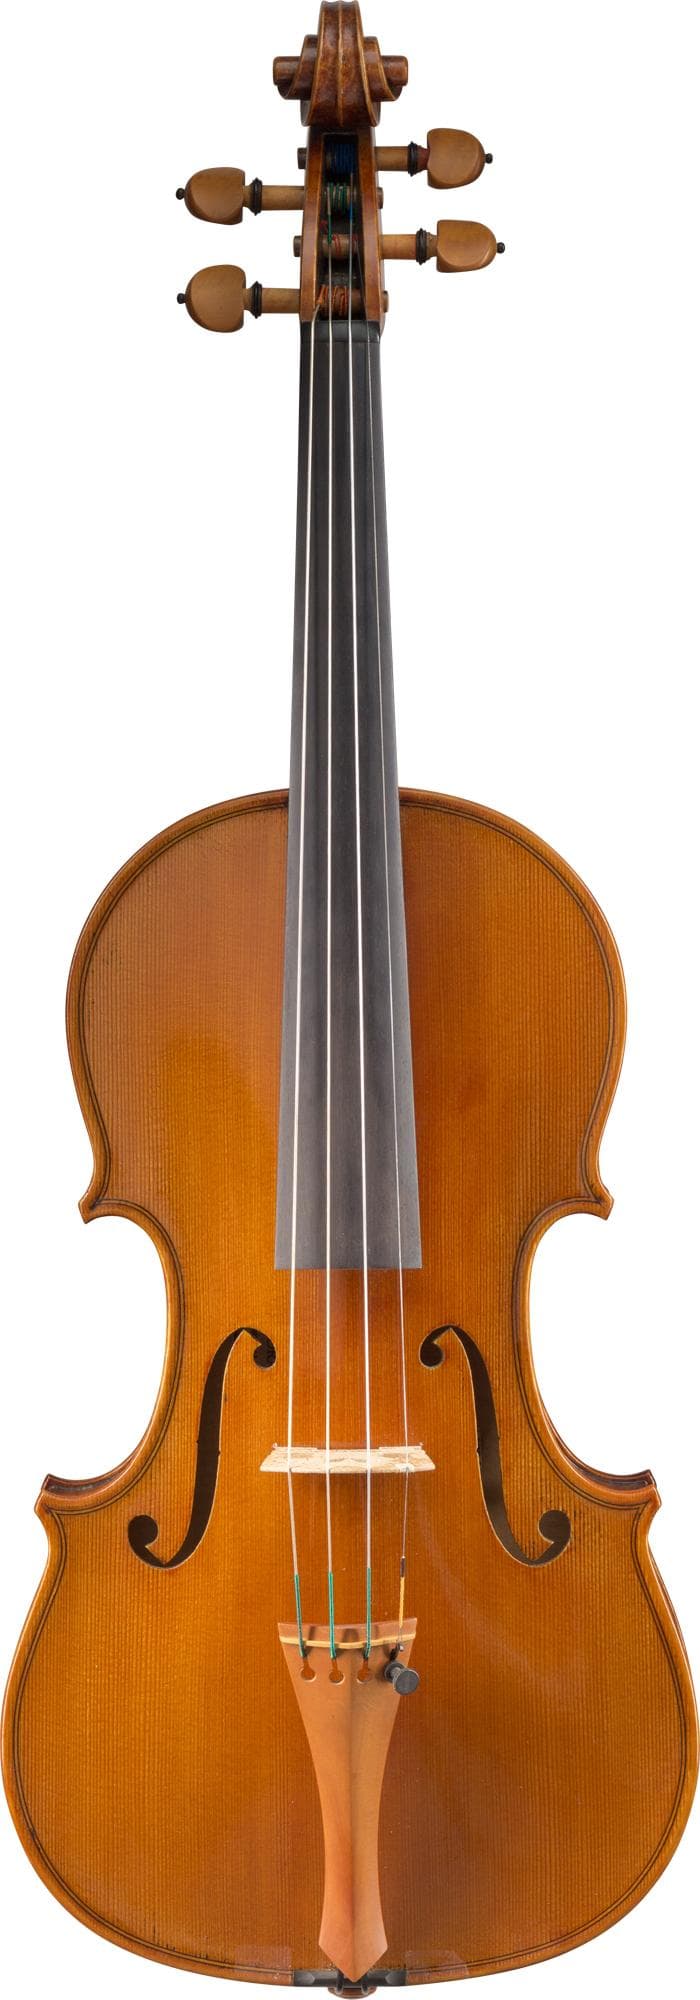 Andranik Gaybaryan Violin, Massachusetts, 2012